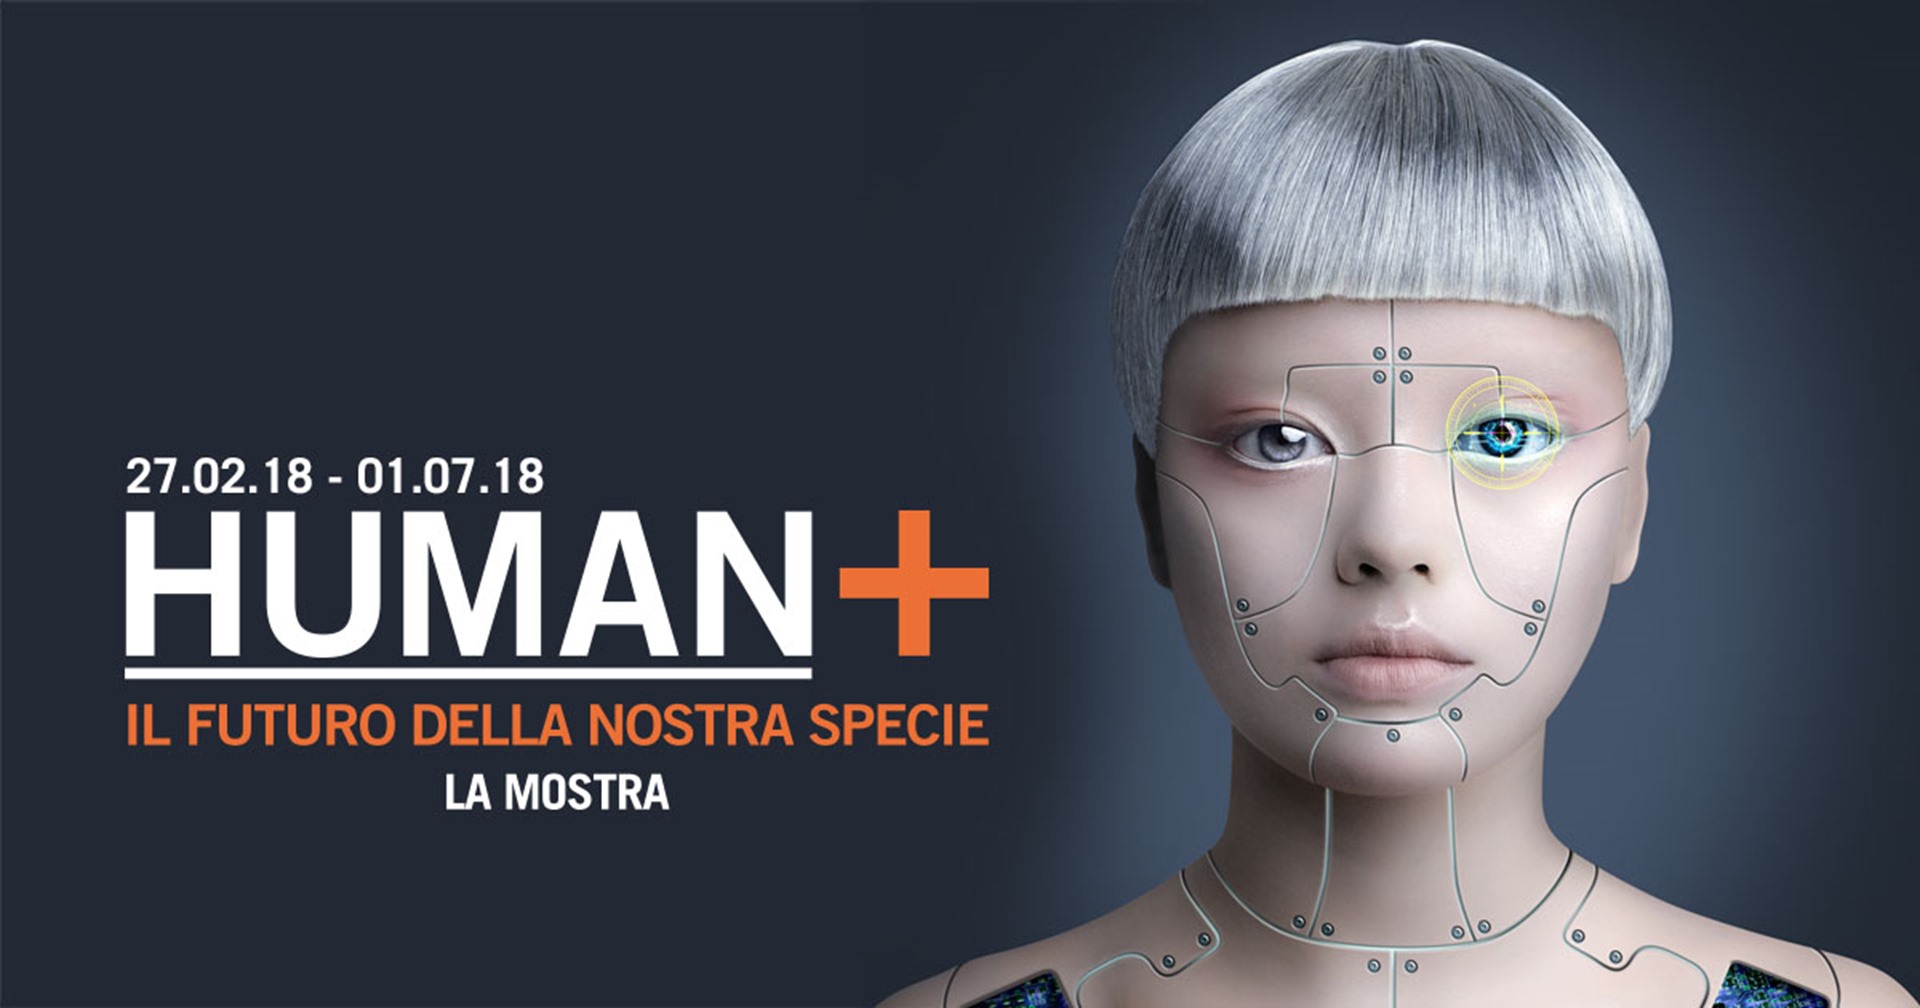 Human+. Il futuro della nostra specie